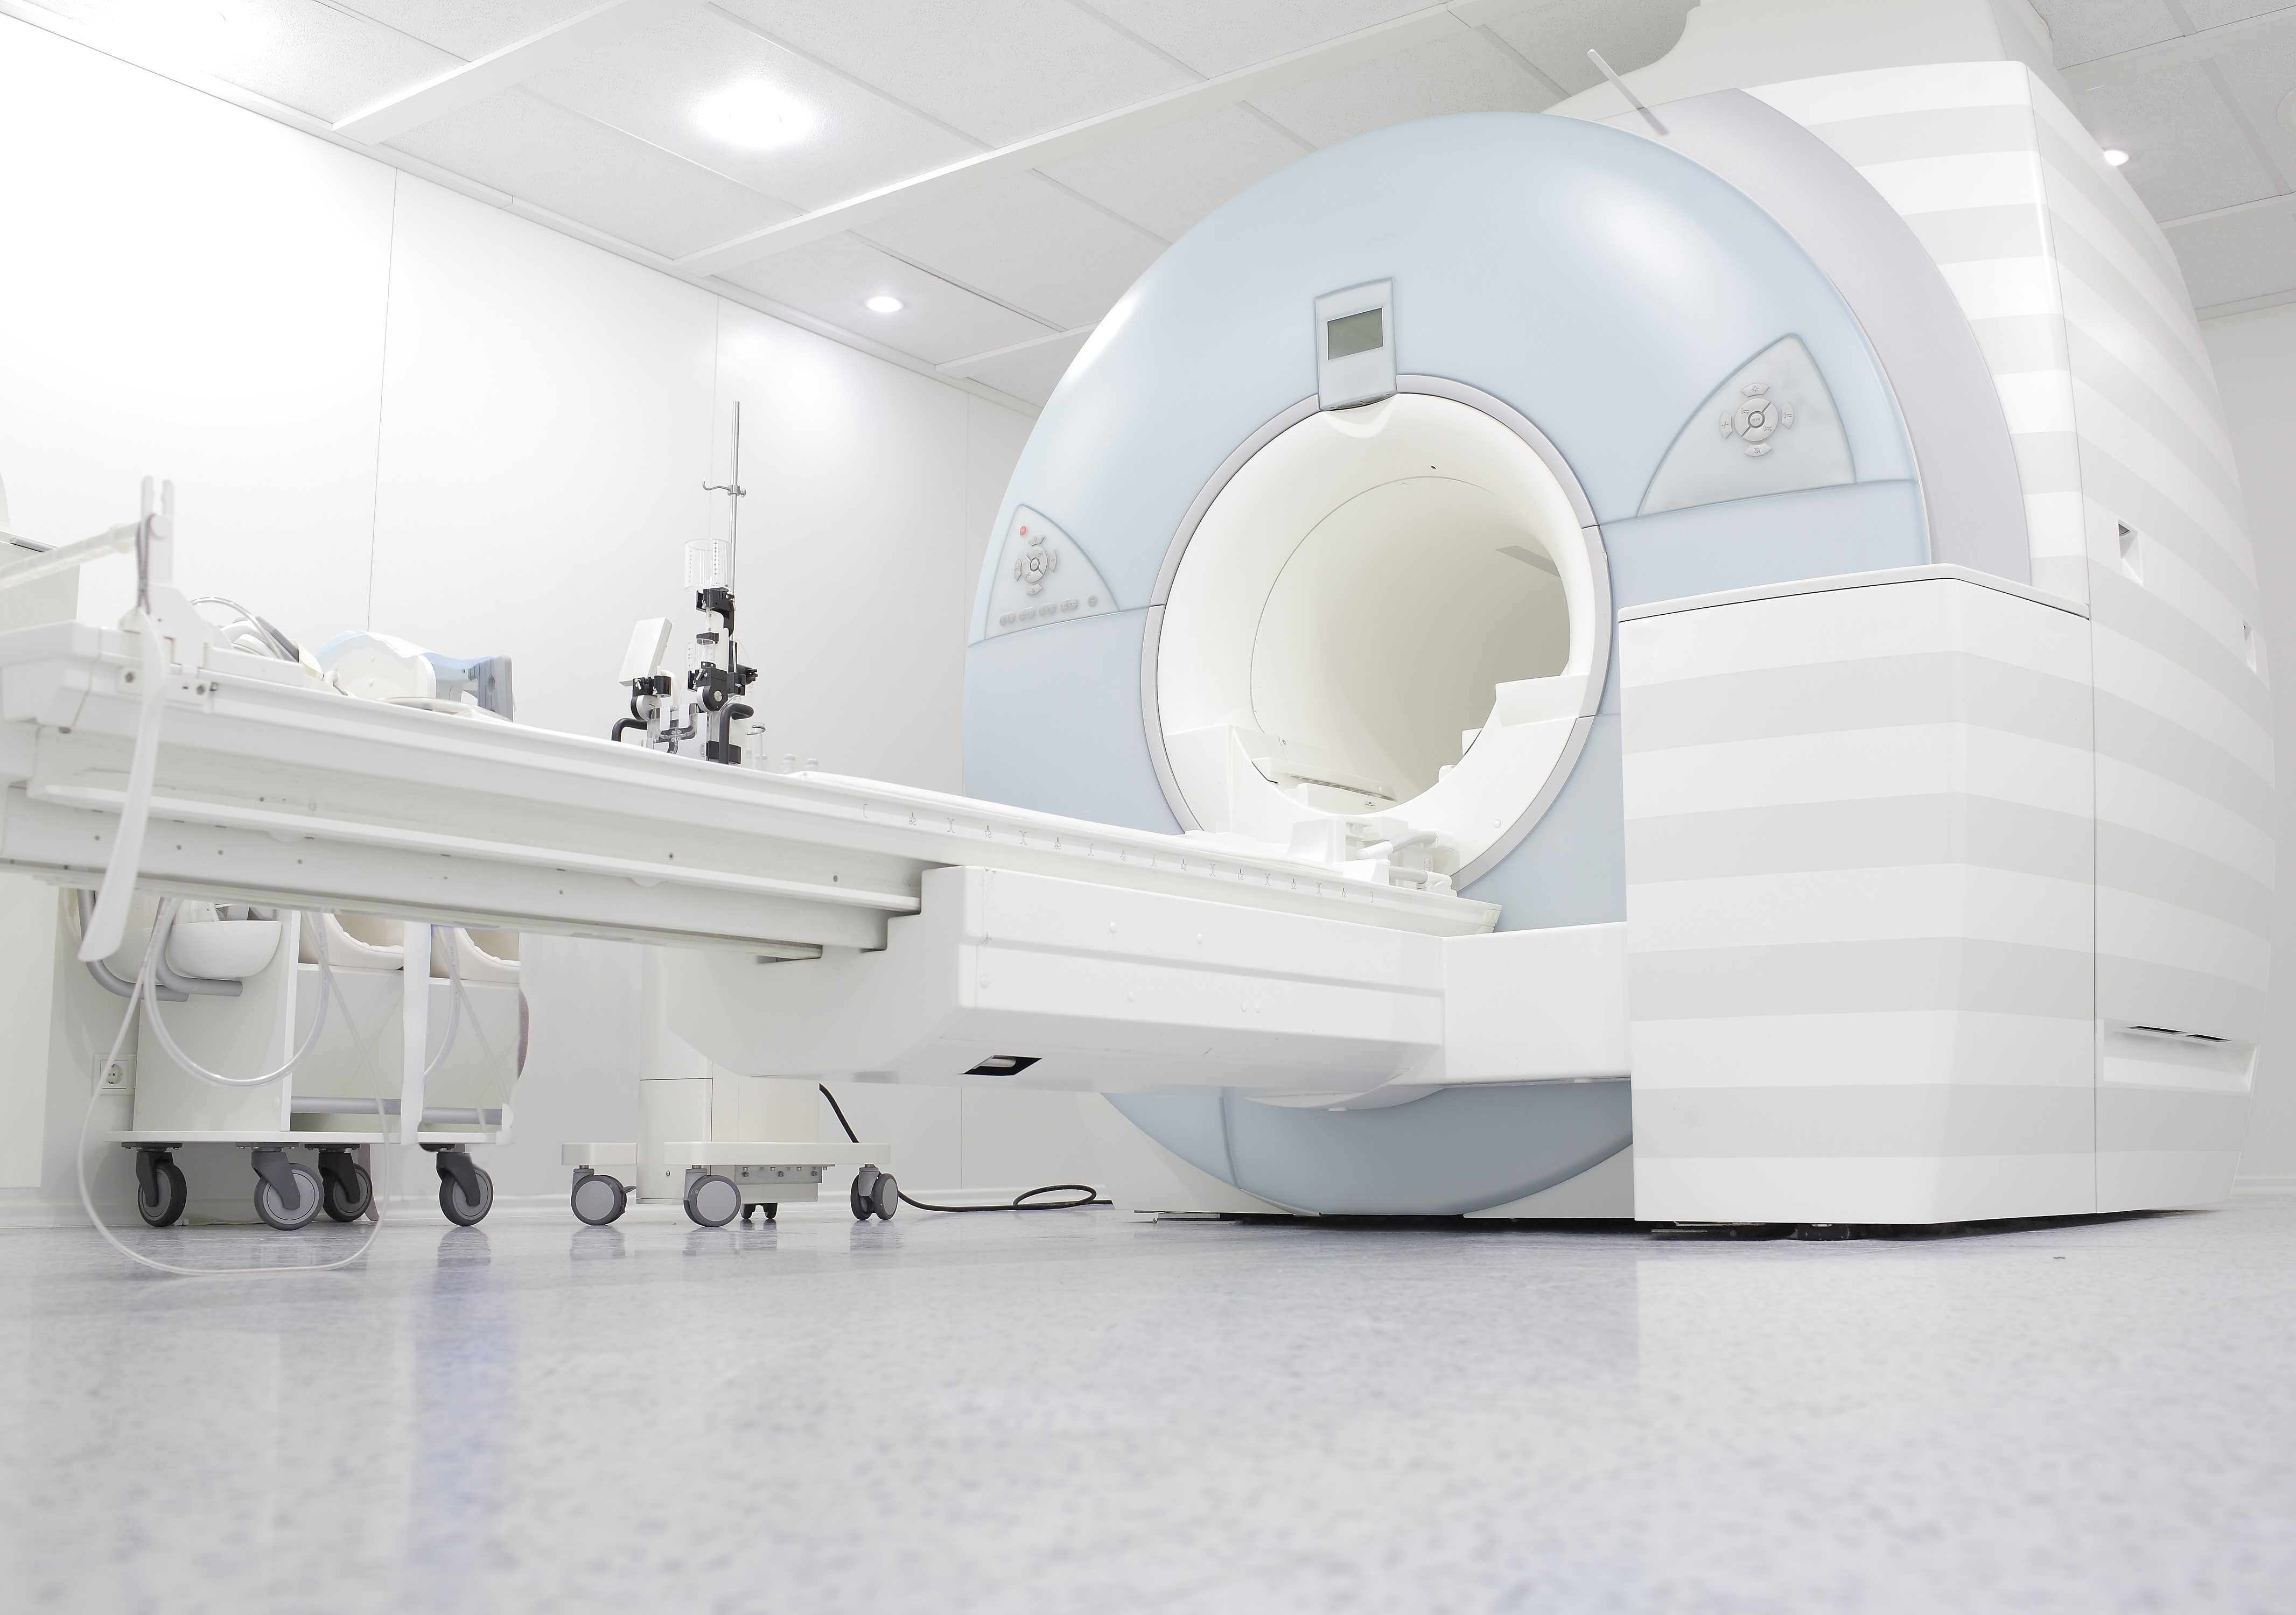 A magnetic resonance imaging (MRI) room